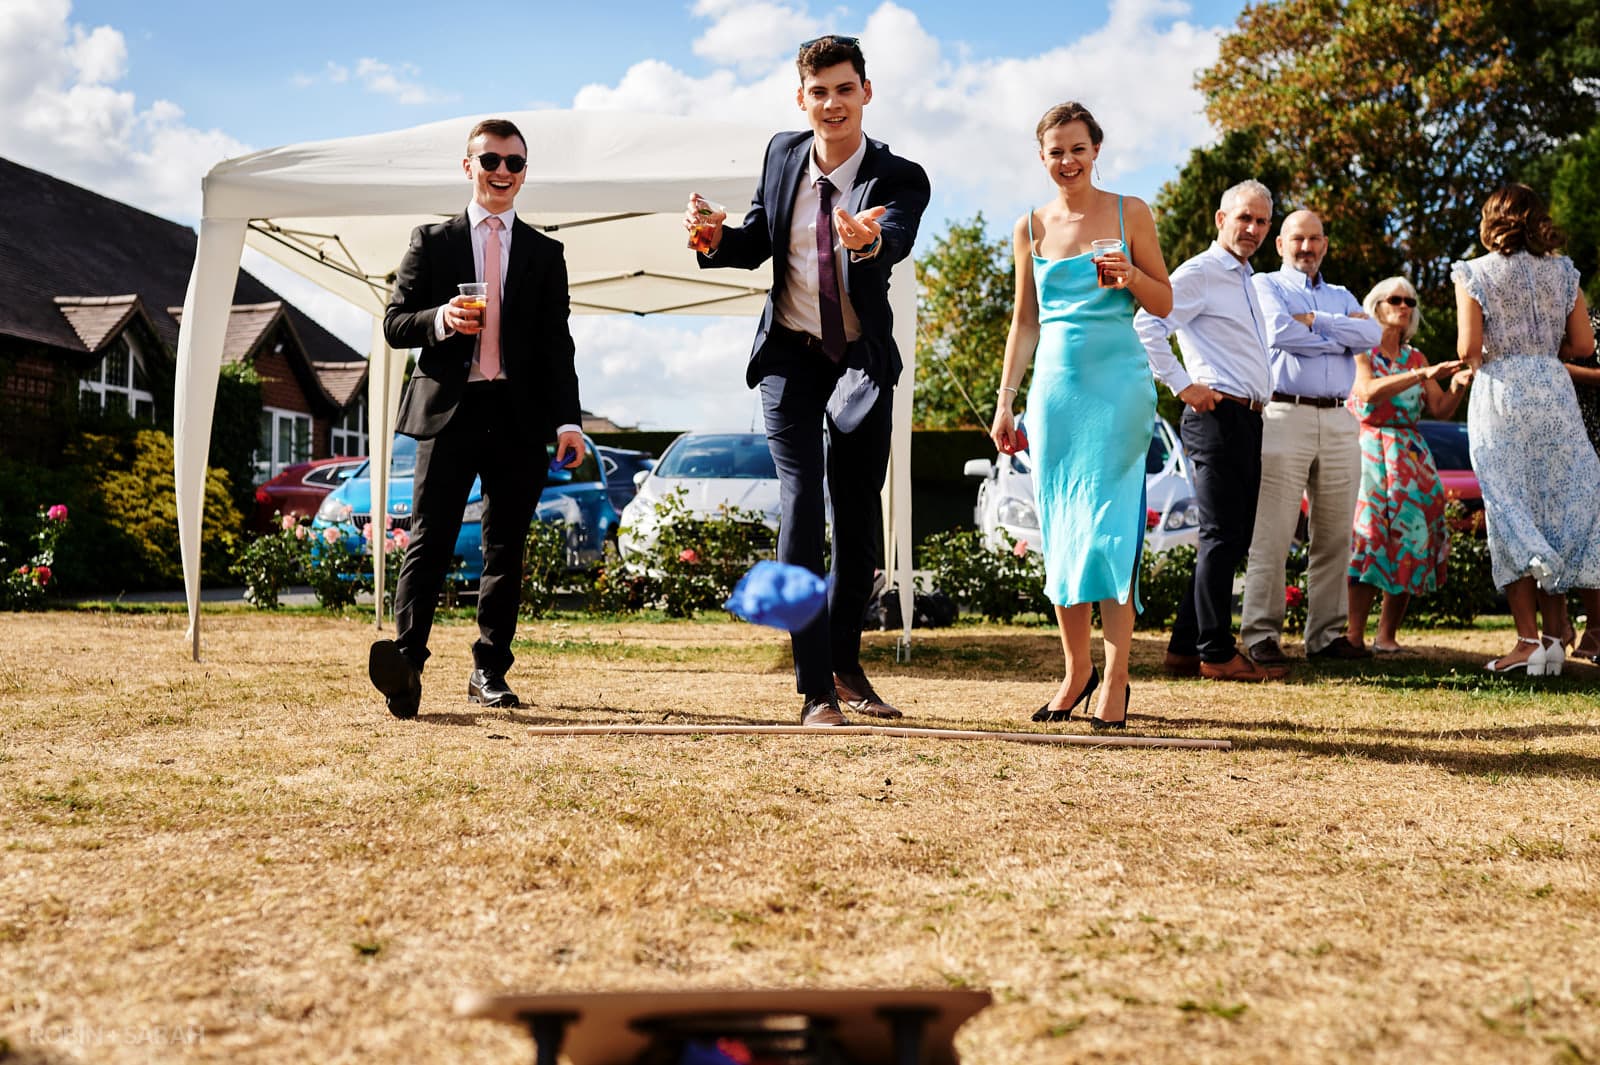 Guests play garden games at village hall wedding in Warwickshire